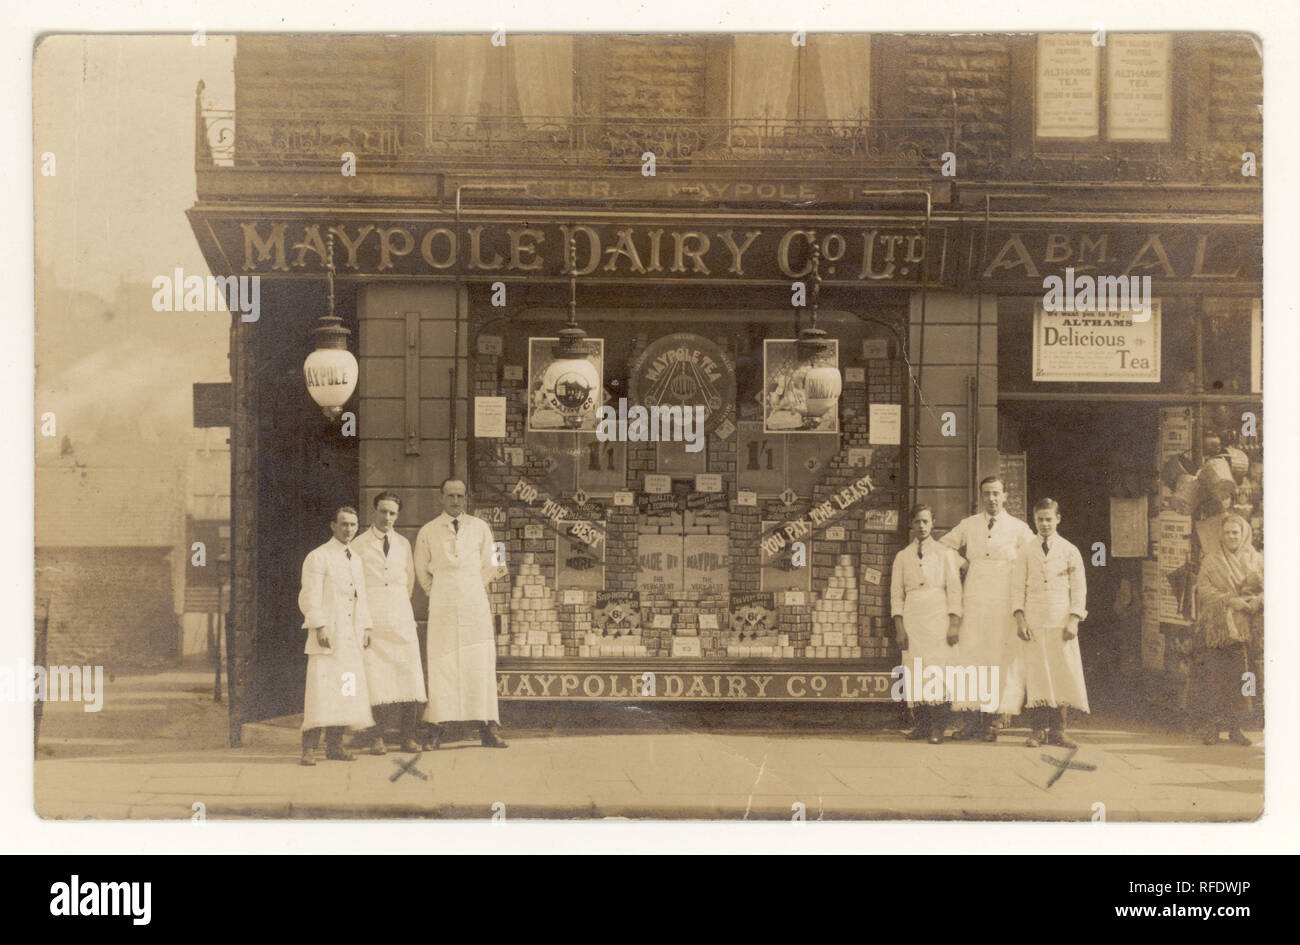 Die originale Postkarte der Maypole Dairy Co. Aus dem frühen 19. Jahrhundert Ltd Store und Personal. Die Ladenkette Maypole Dairy lieferte Milchprodukte zu erschwinglichen Preisen in Arbeitergebieten. Da ist ein Altham Teeunternehmen Werbeschild über der Tür. Postkarte datiert vom 4. Juli 1921 auf der Rückseite, Yorkshire, England U.K, Stockfoto